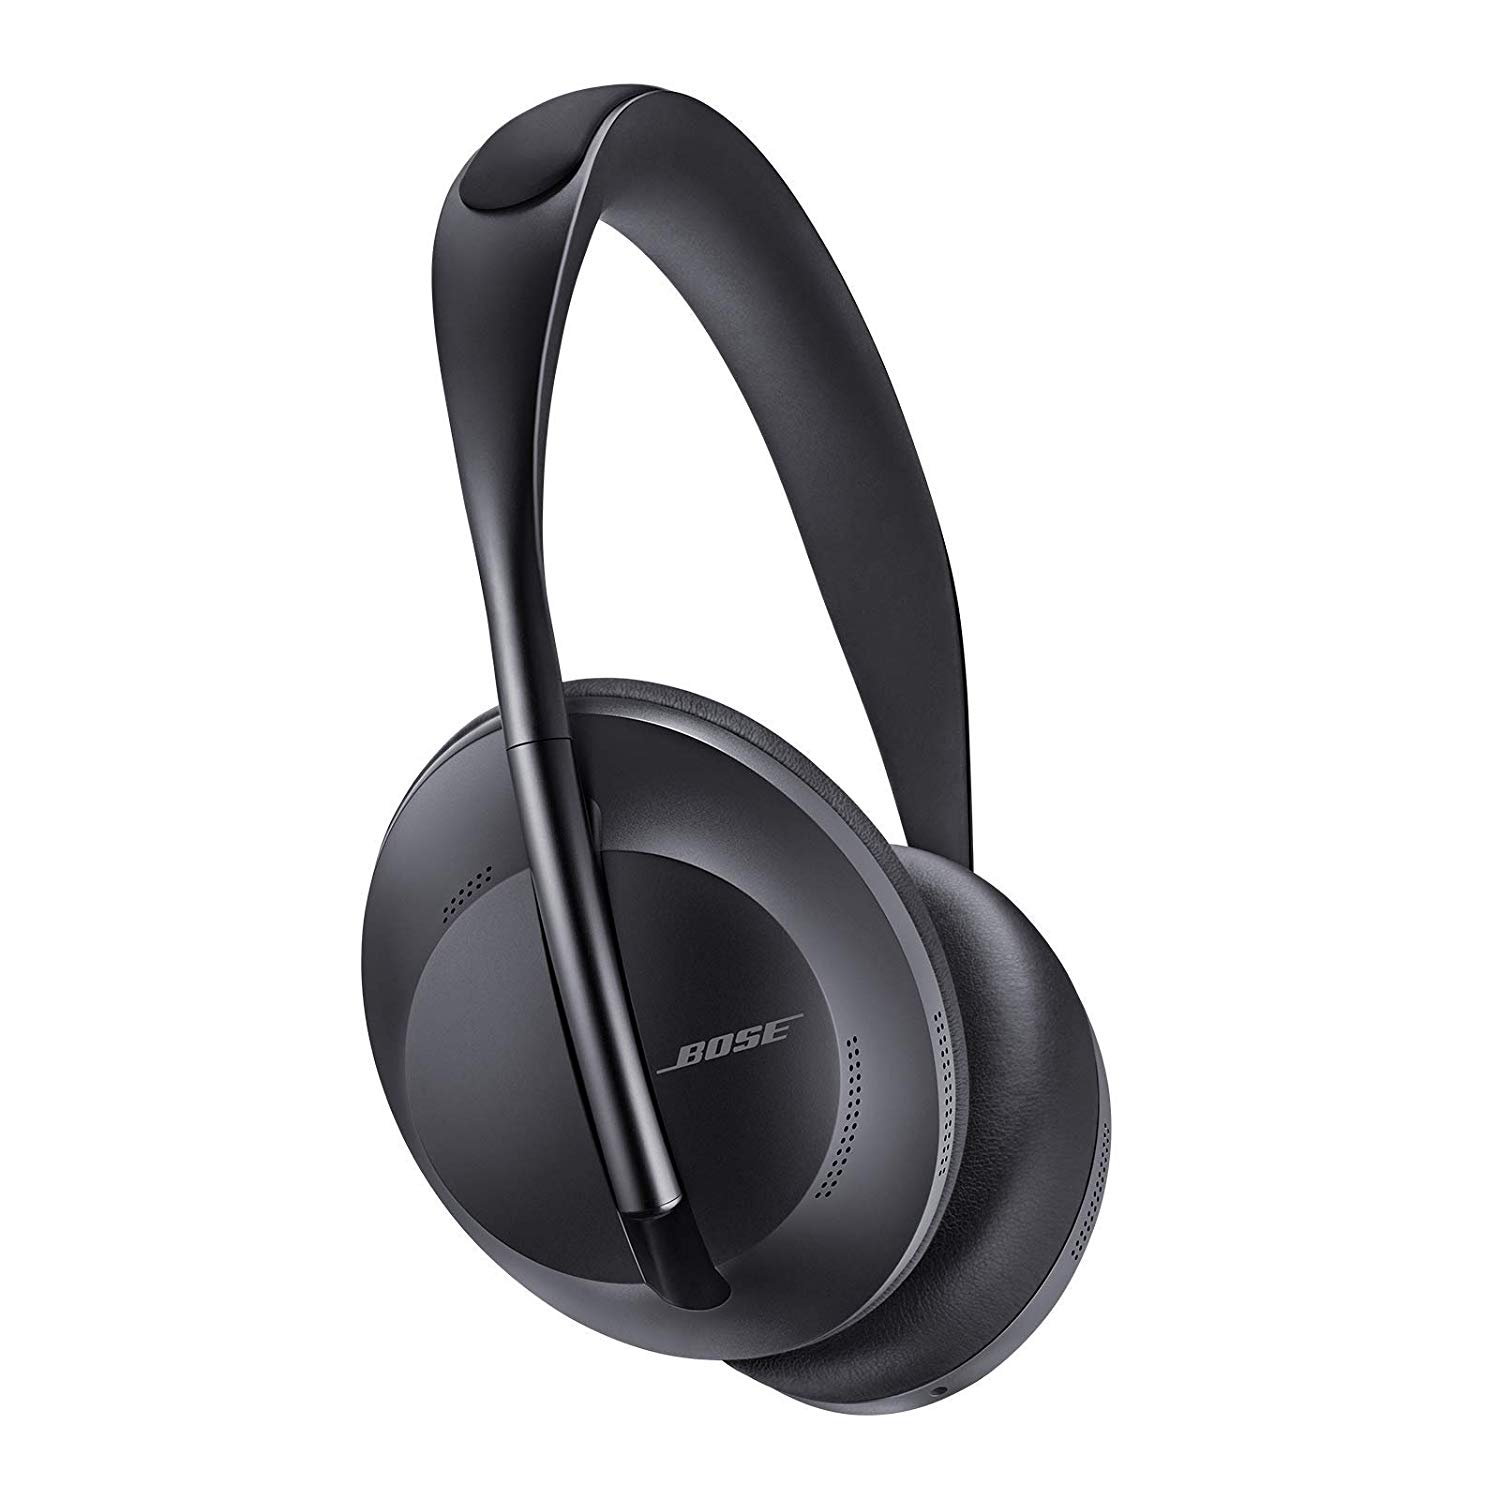 Bose Noise Canceling Headphones 700 product image.